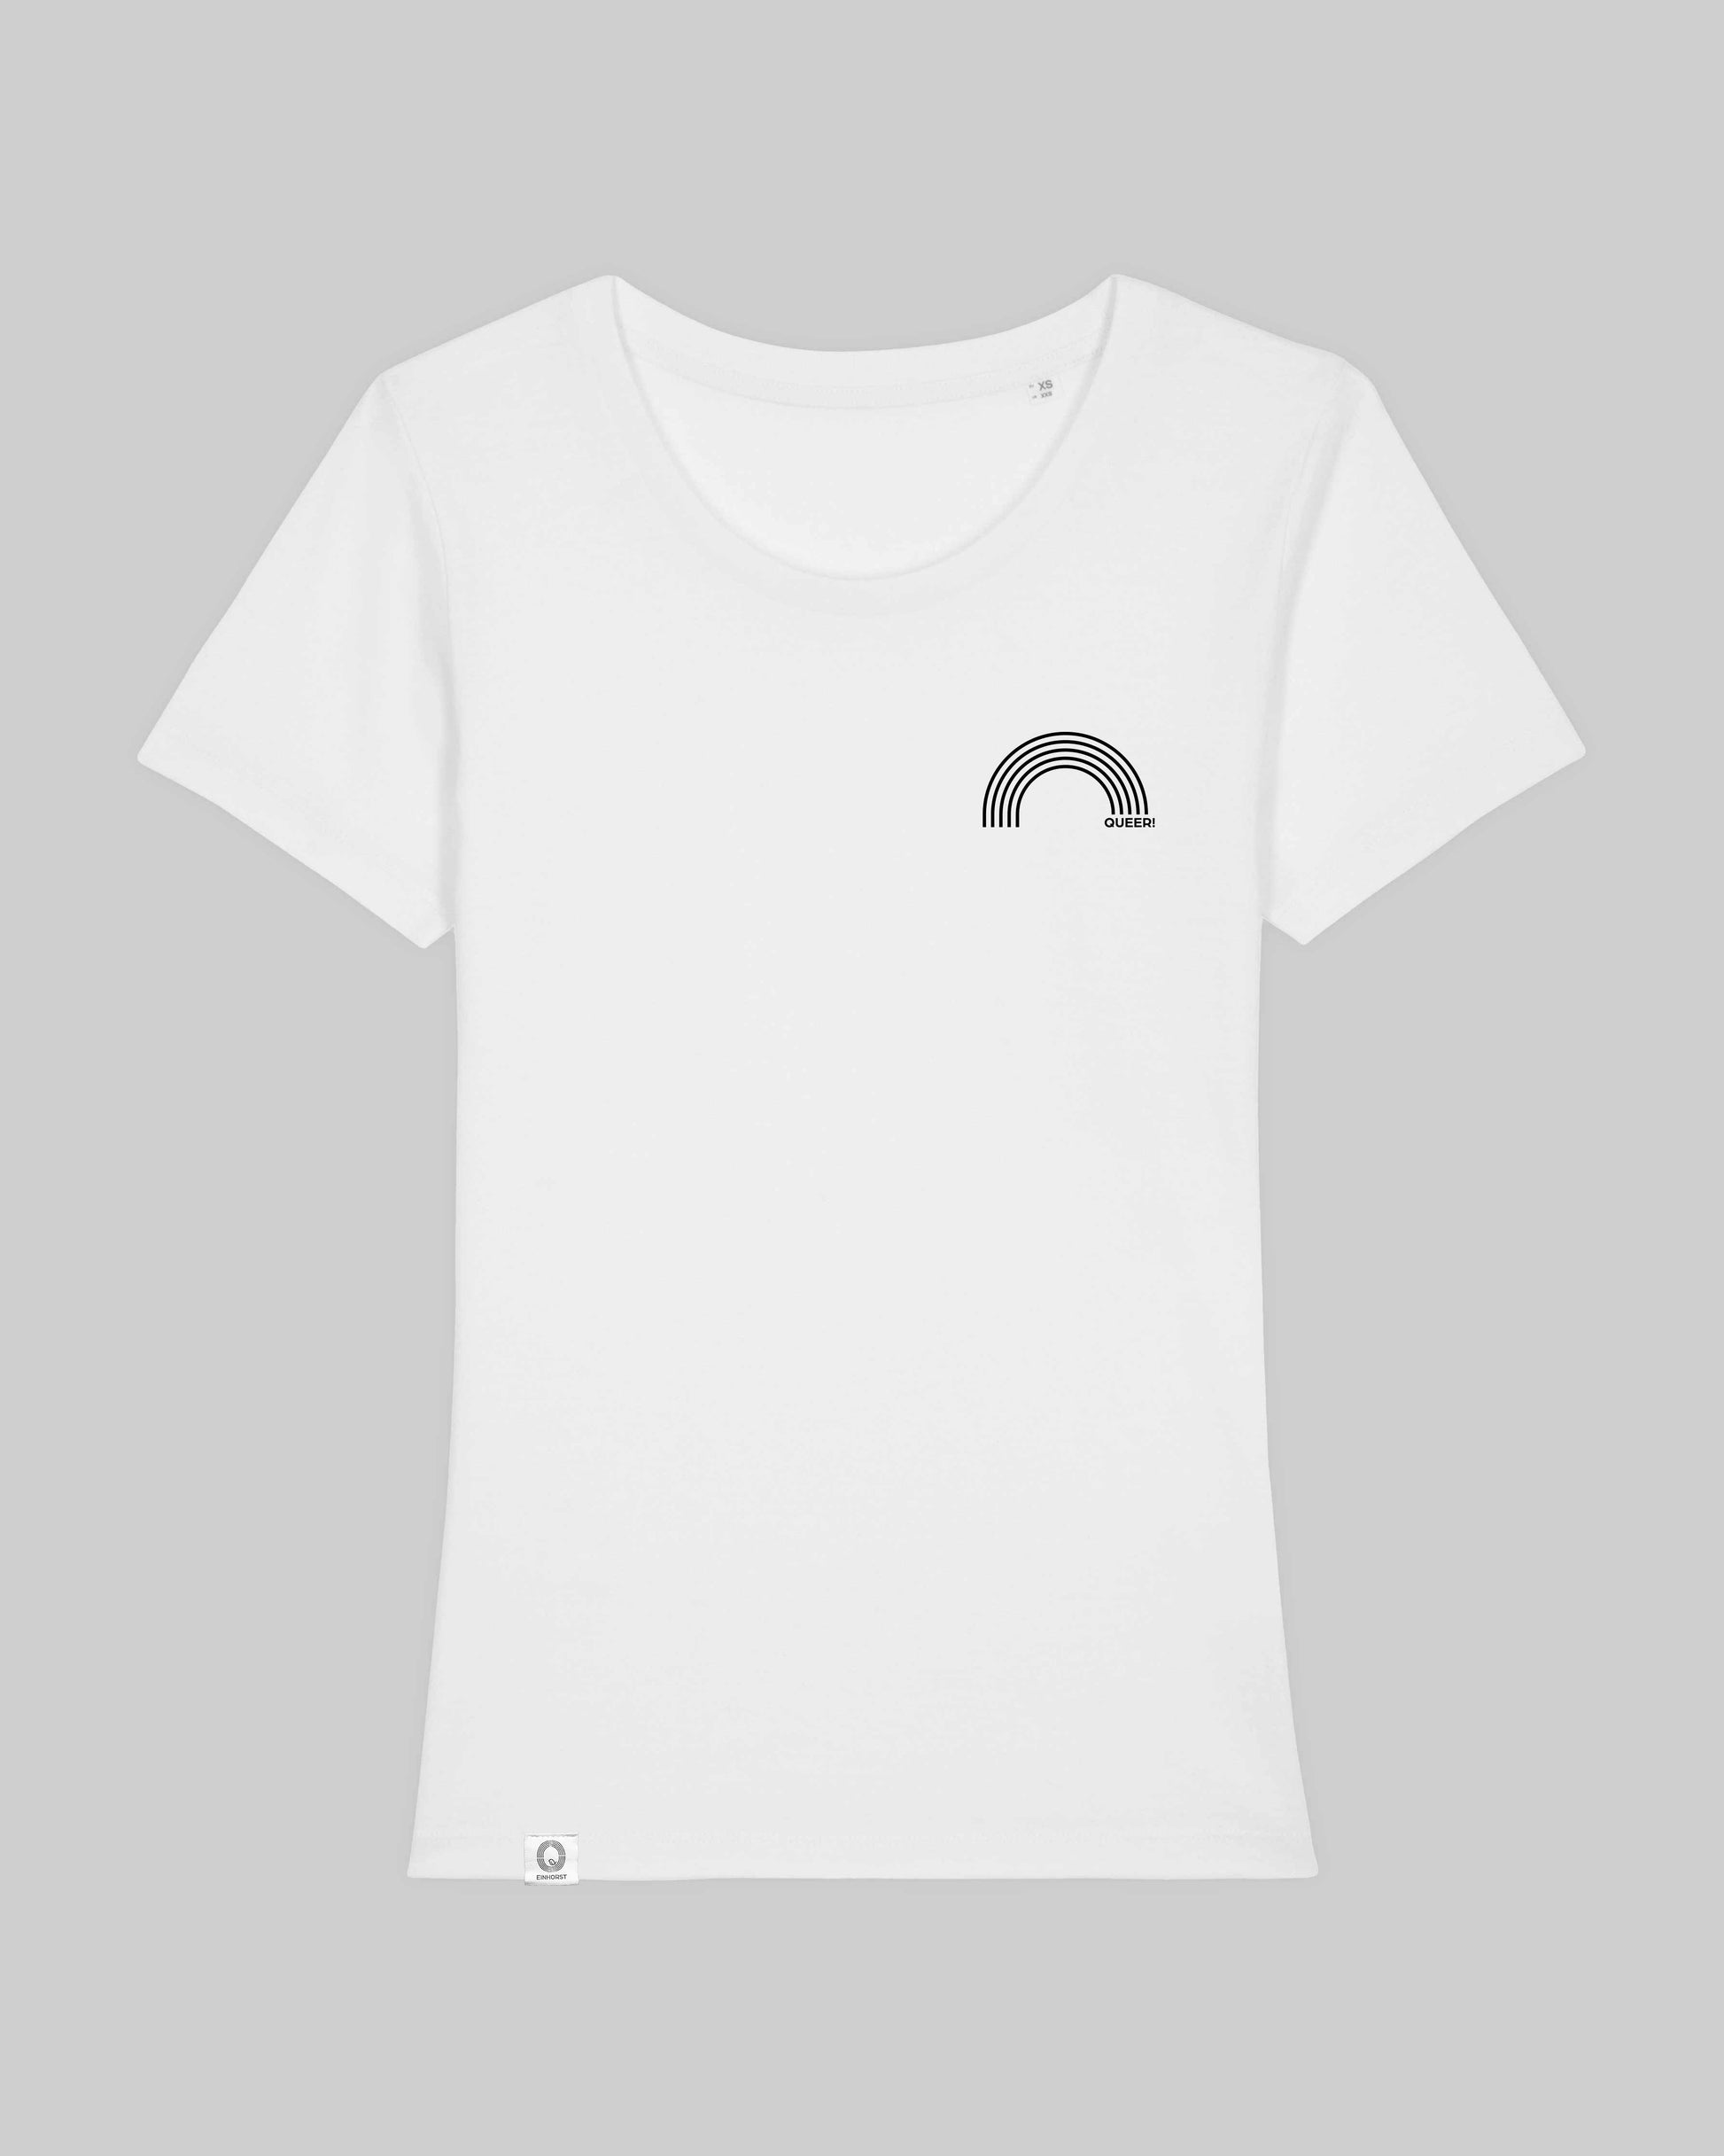 EINHORST® Organic Shirt tailliert in "Weiß" mit dem Motiv "queer Regenbogen" in der Kombination schwarzer Regenbogen mit schwarzer Schrift, Bild von Shirt von vorne